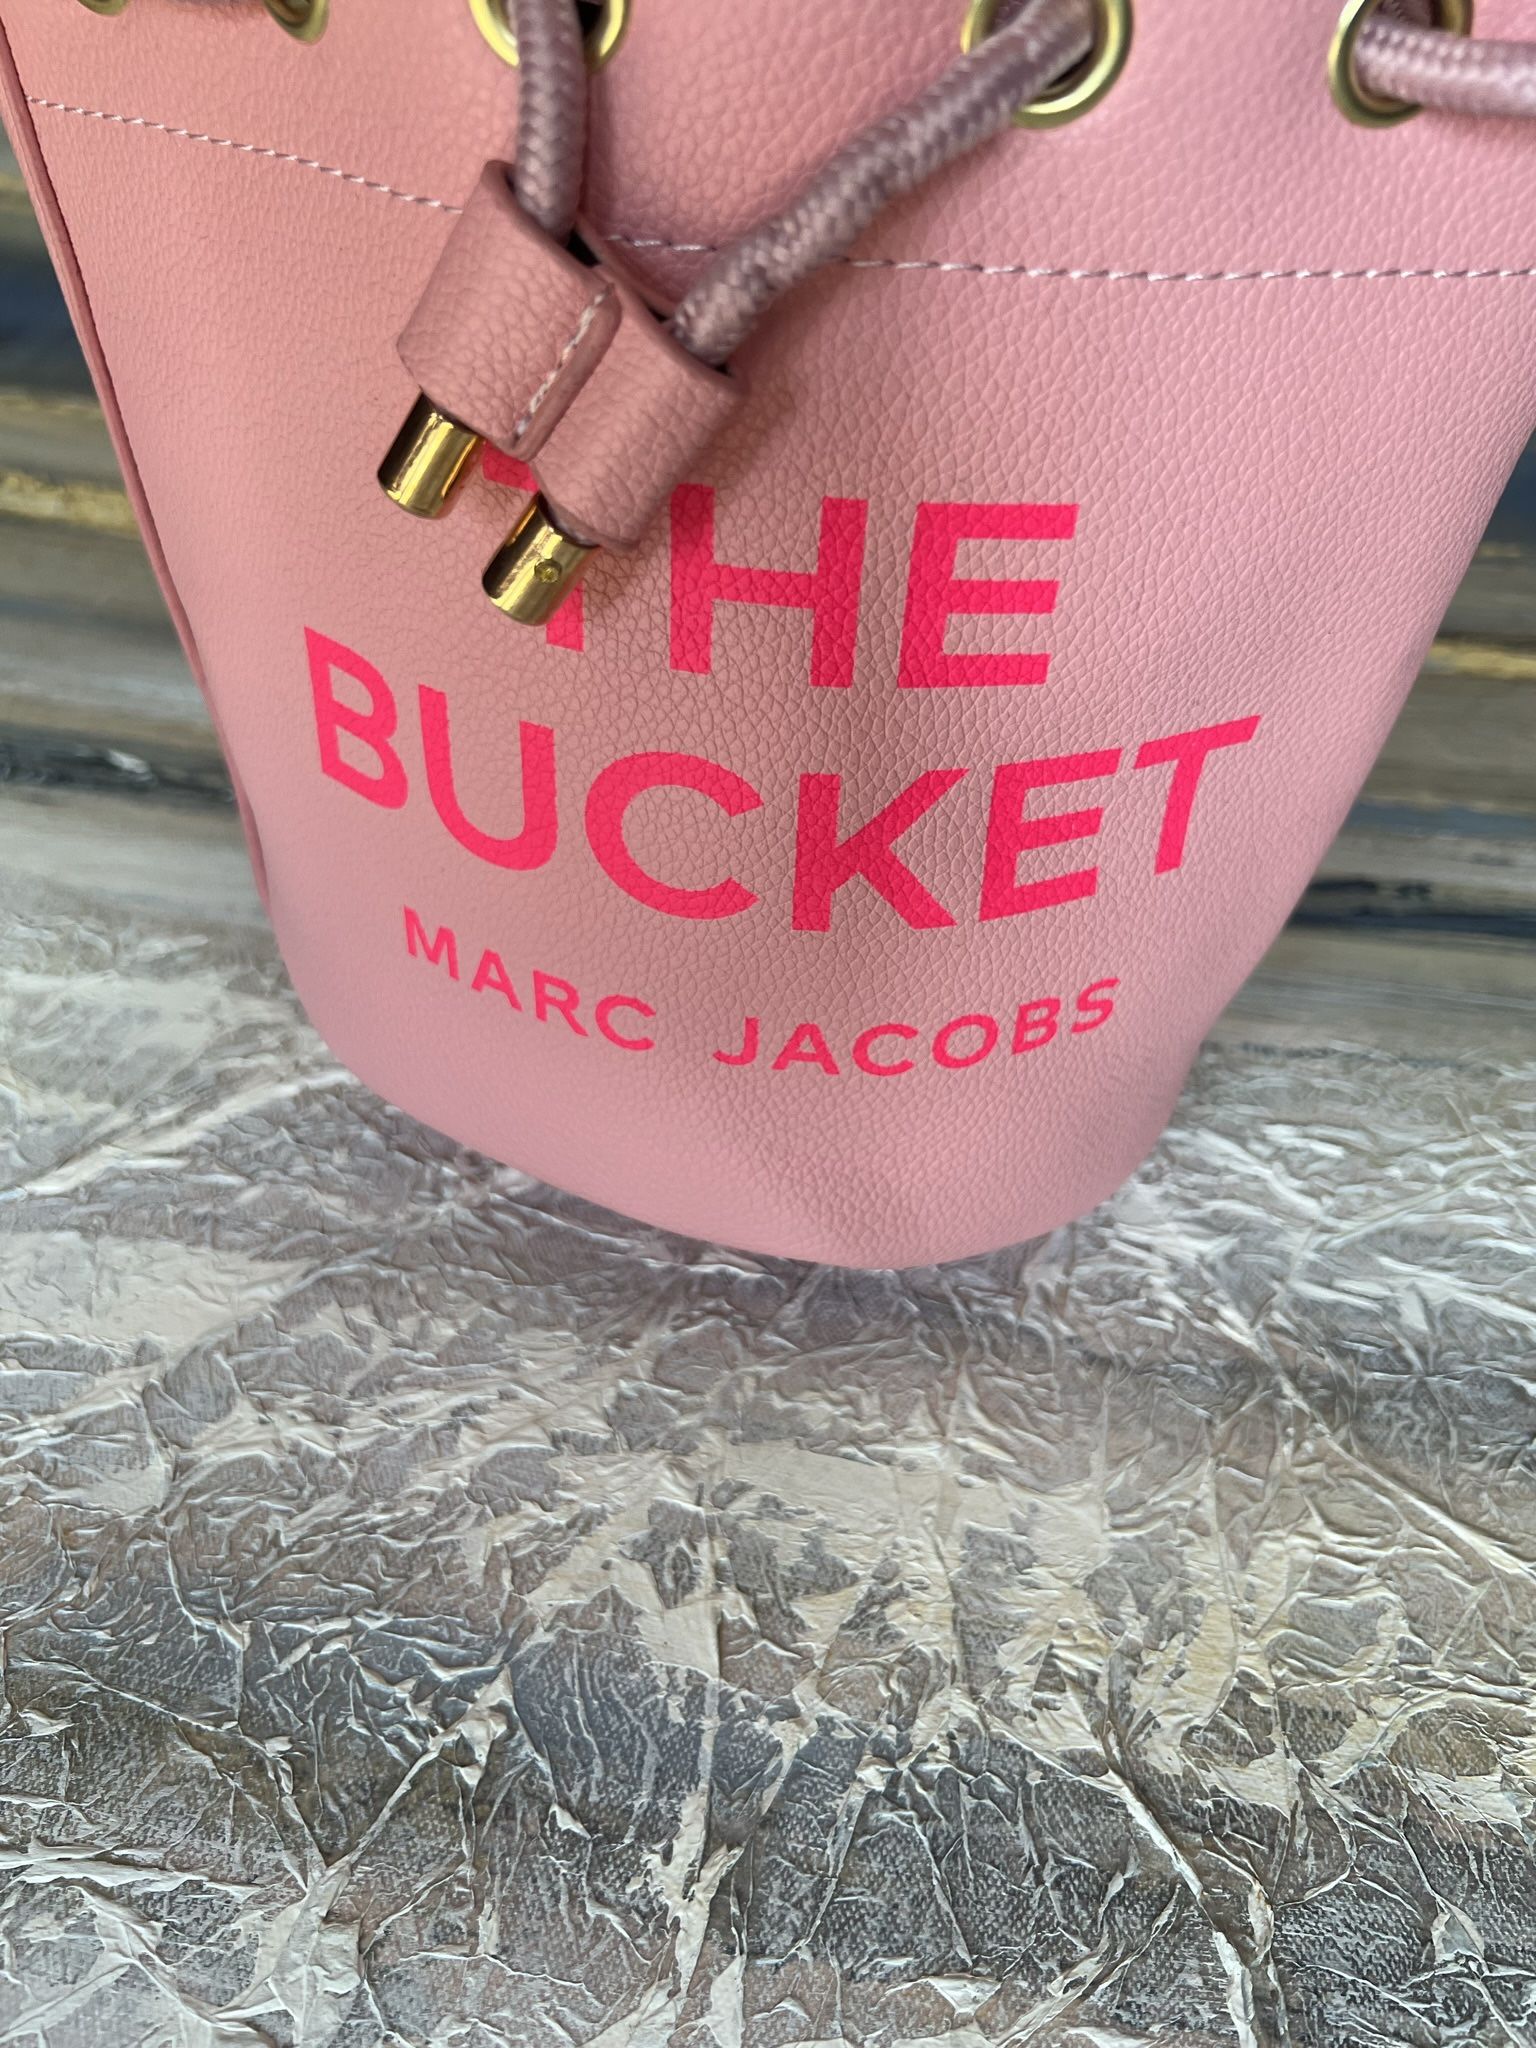 Marc Jacob bucket 